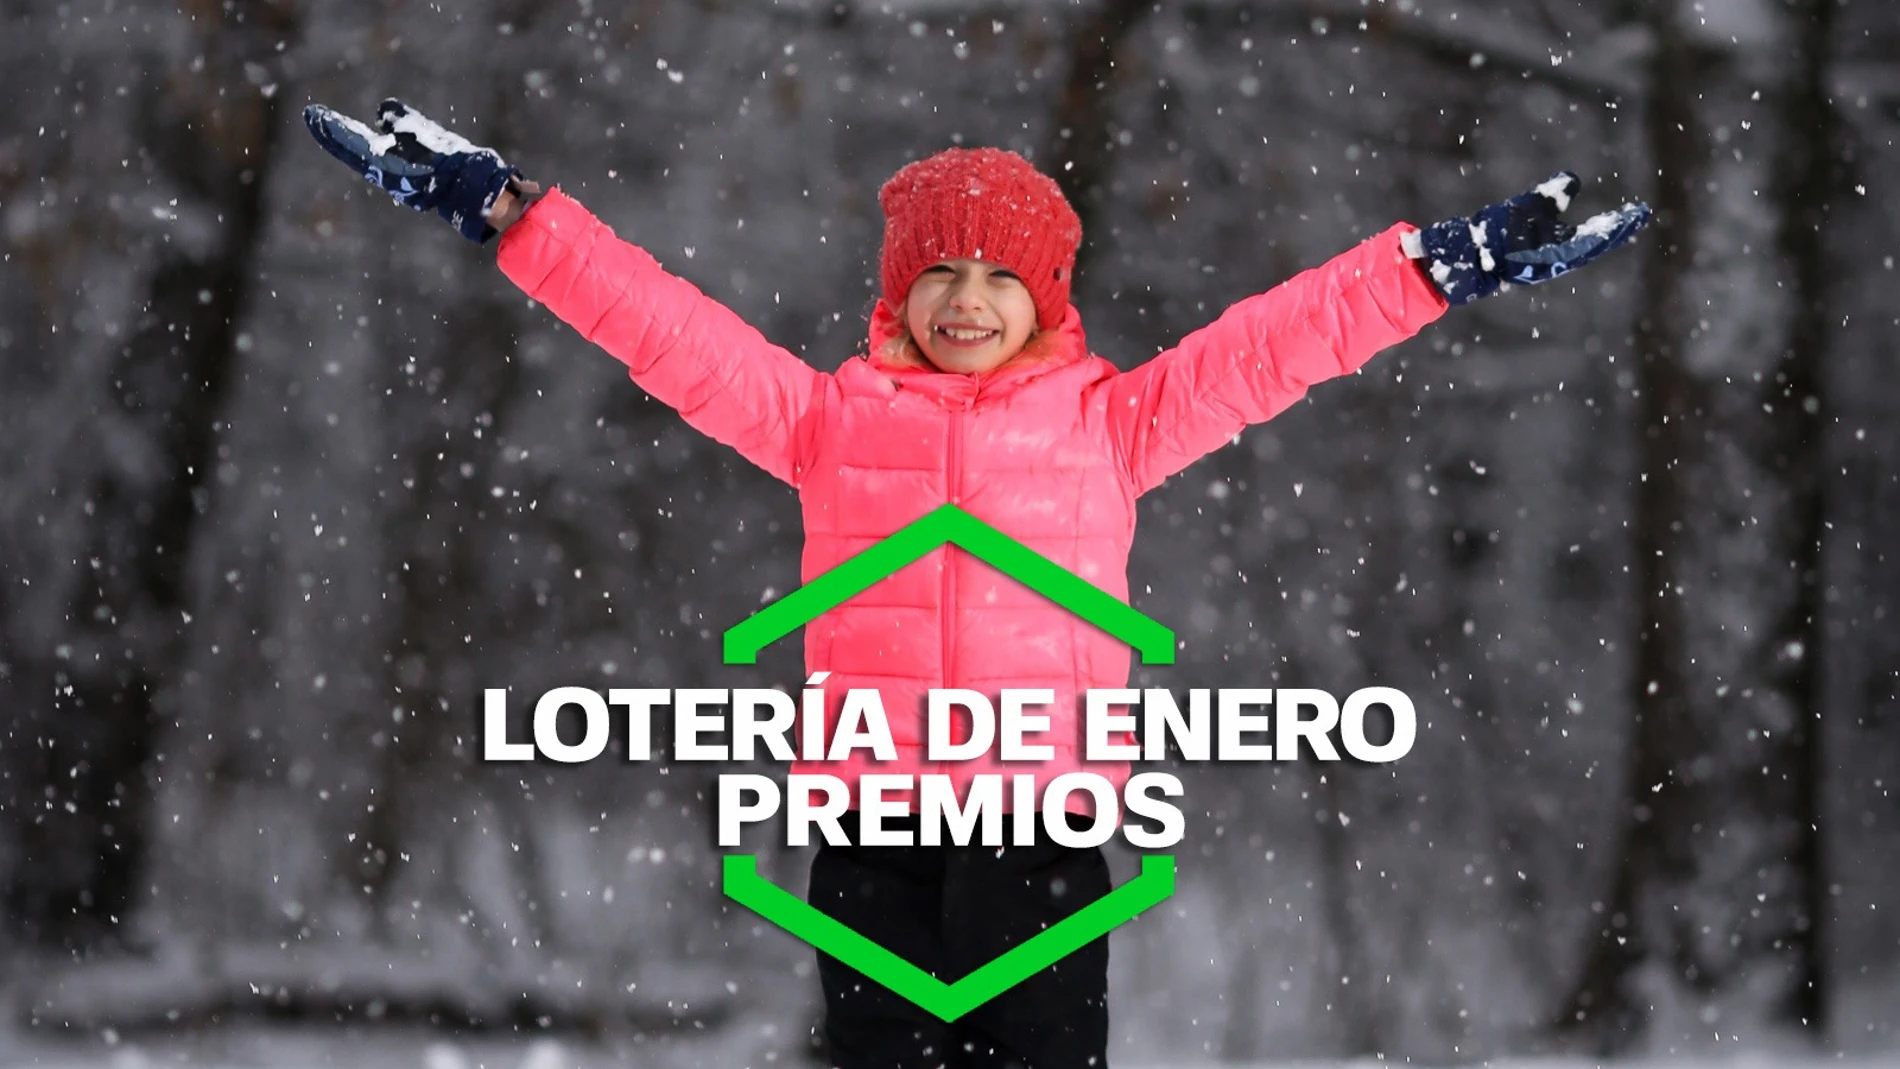 ¿Qué premios reparte el Sorteo Especial de Lotería Nacional de Enero?